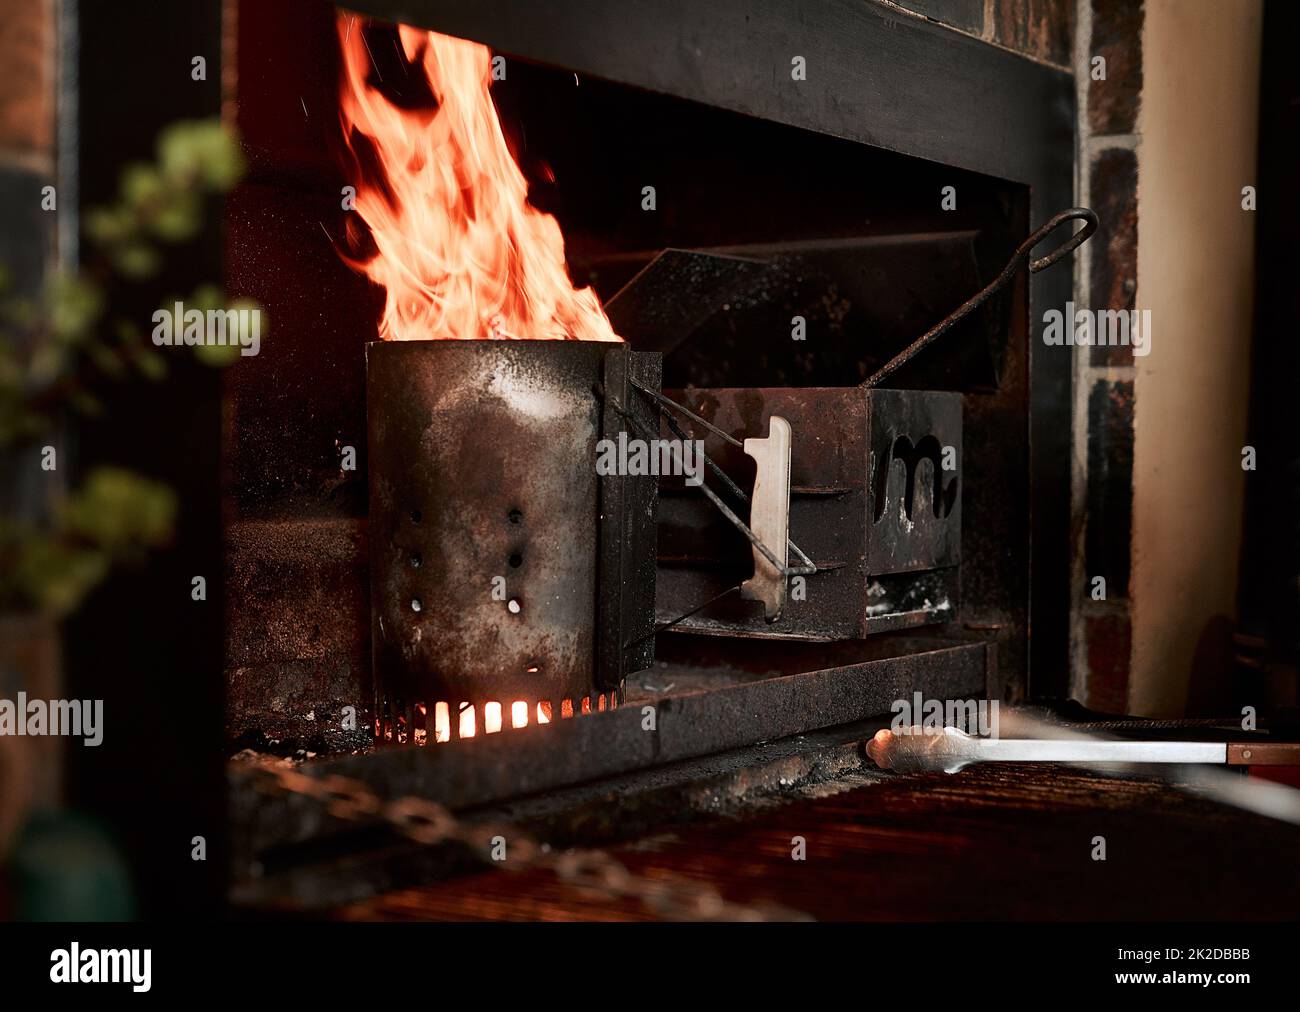 Lassen Sie uns dieses BBQ beginnen. Nahaufnahme des Feuers, das von einem kohlebrosigen Starter in einem Kamin brennt. Stockfoto